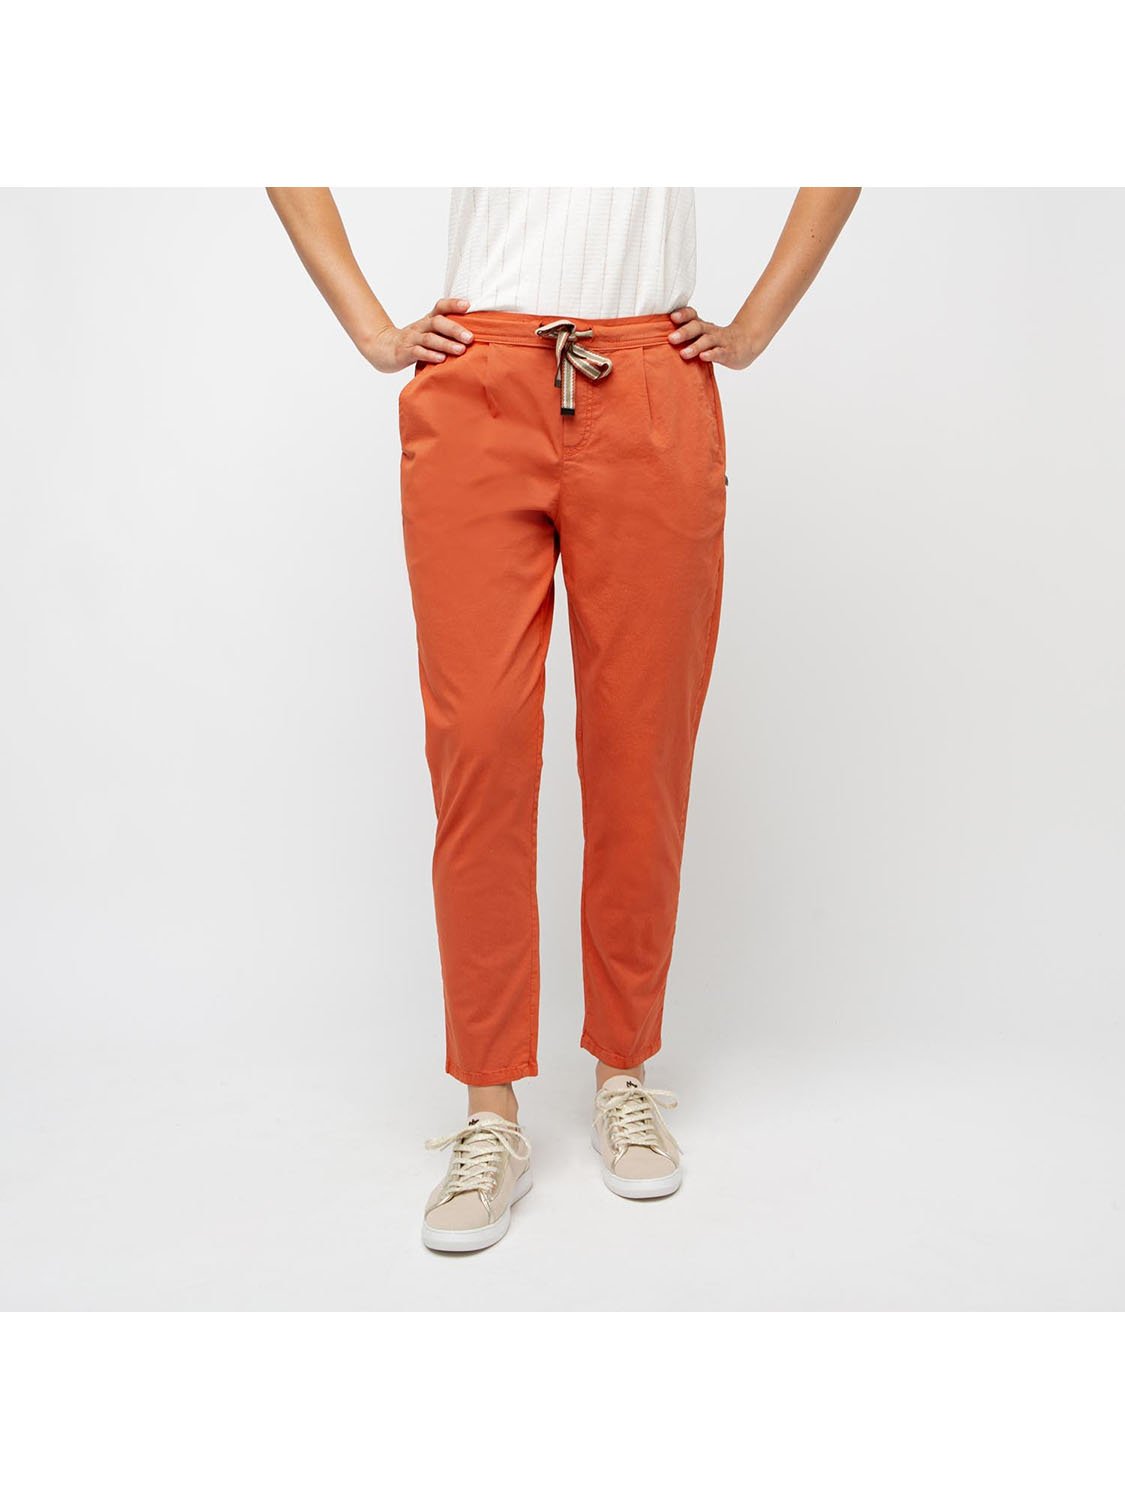 Pantalon Fluide Femme Coton Biologique Orange